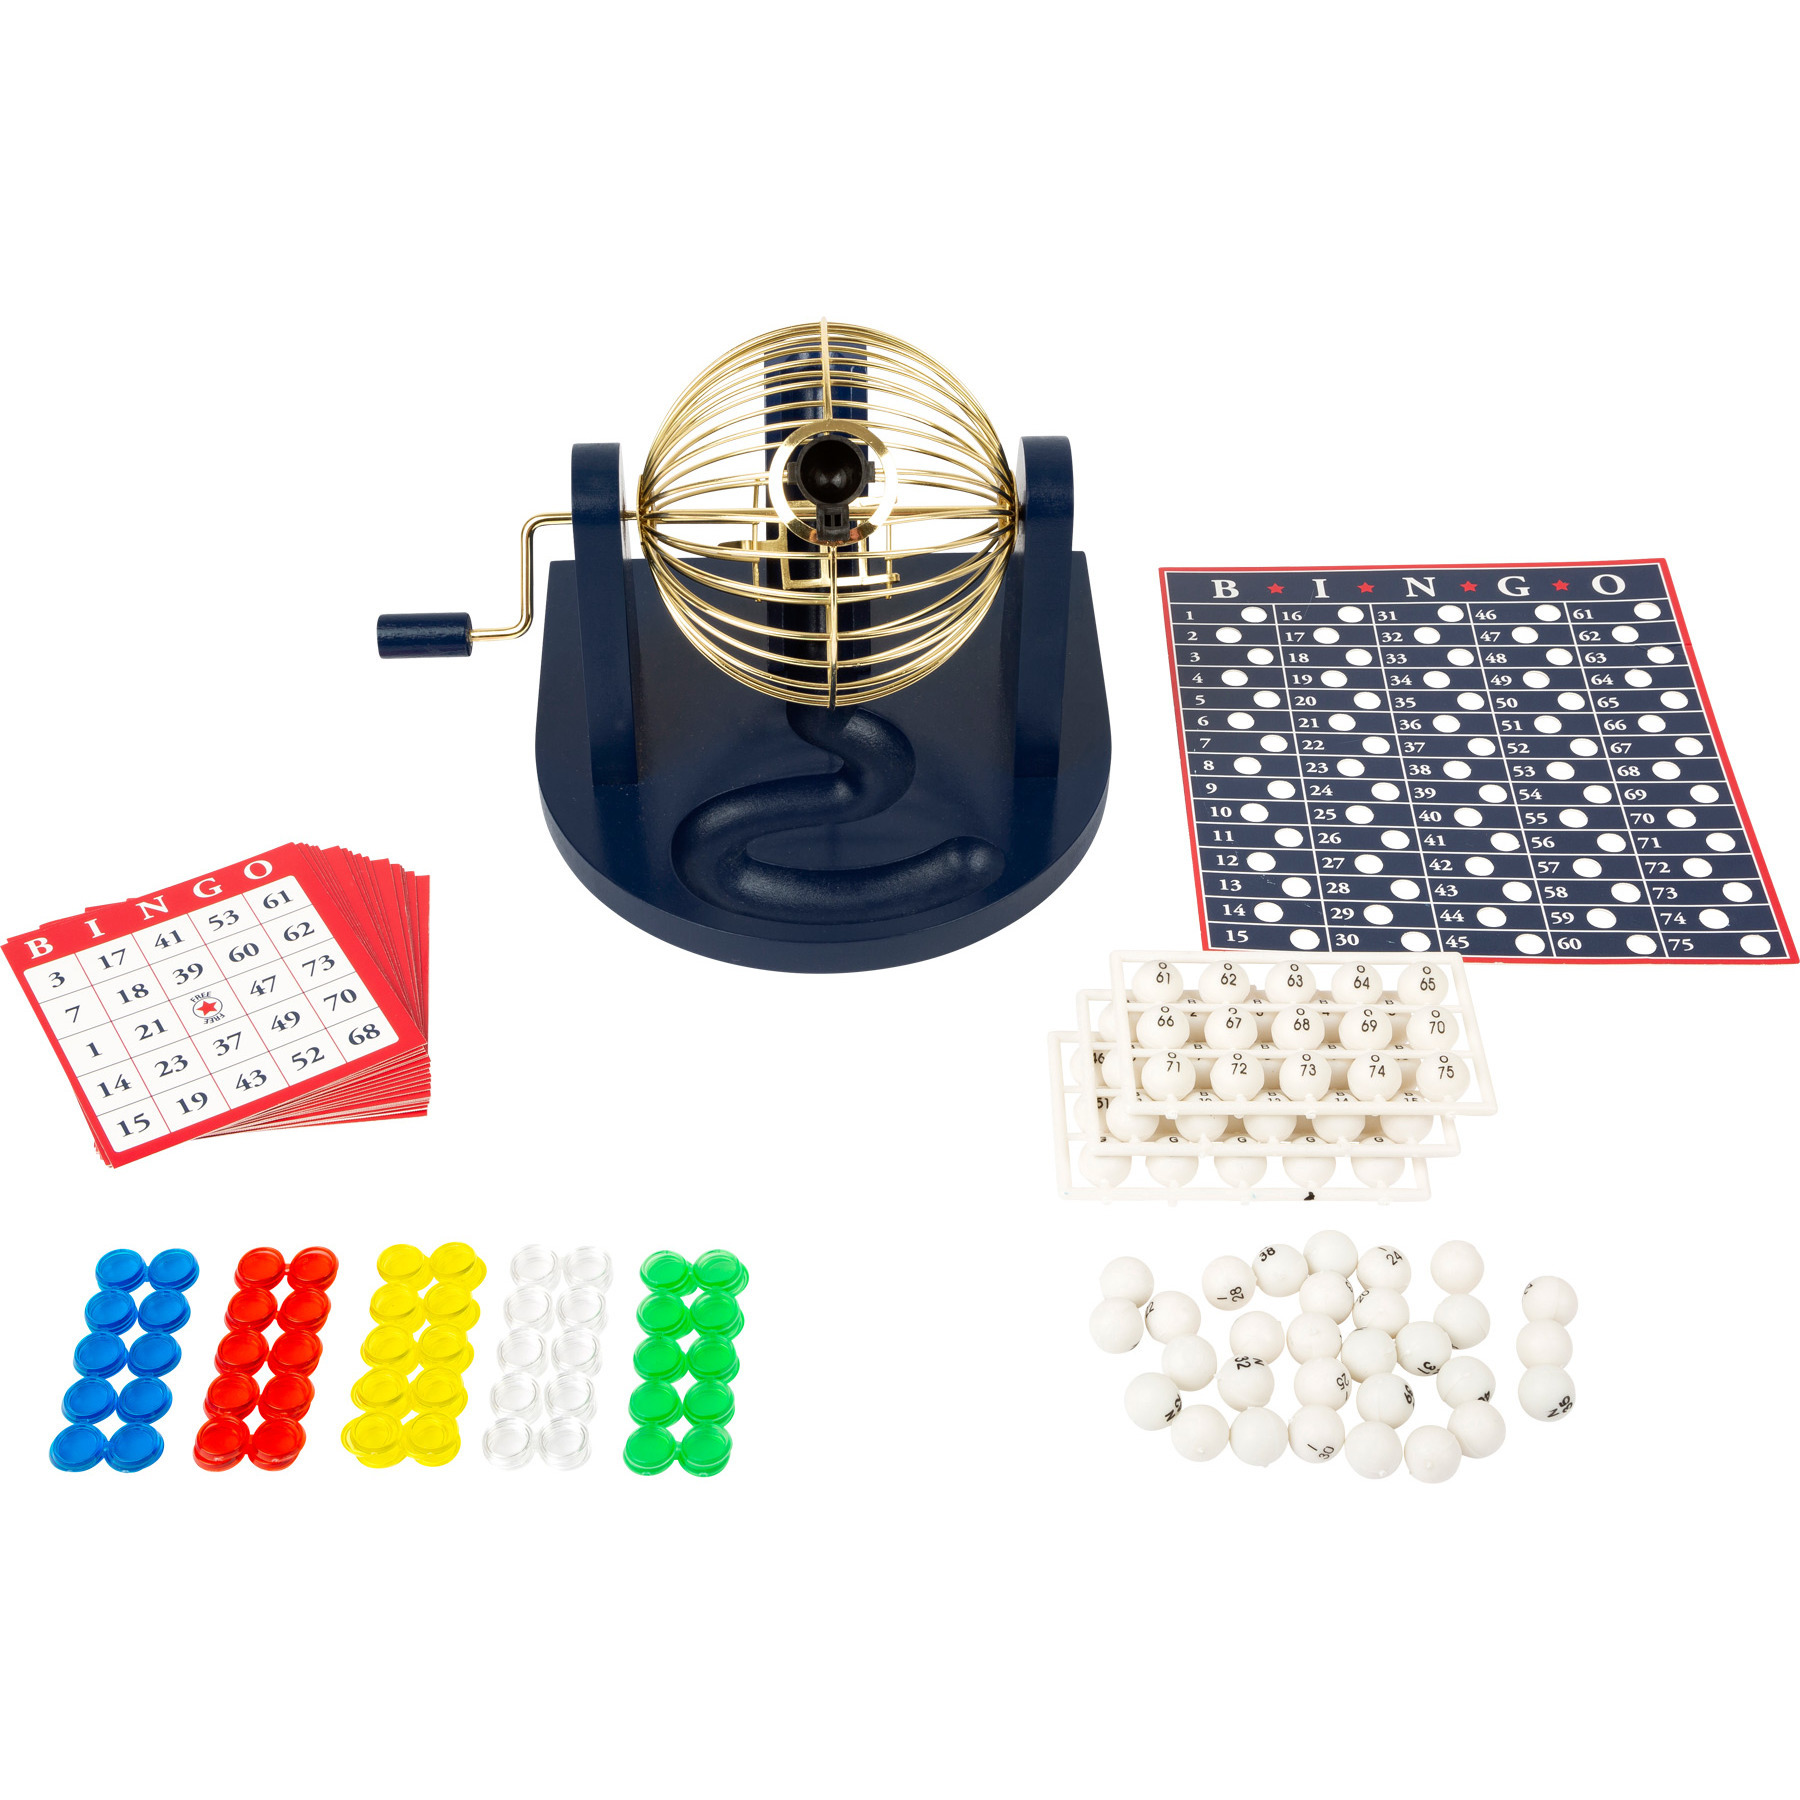 Bingo spel blauw-goud-wit complete set 21 cm nummers 1-75 met molen-167x bingokaarten-2x markers